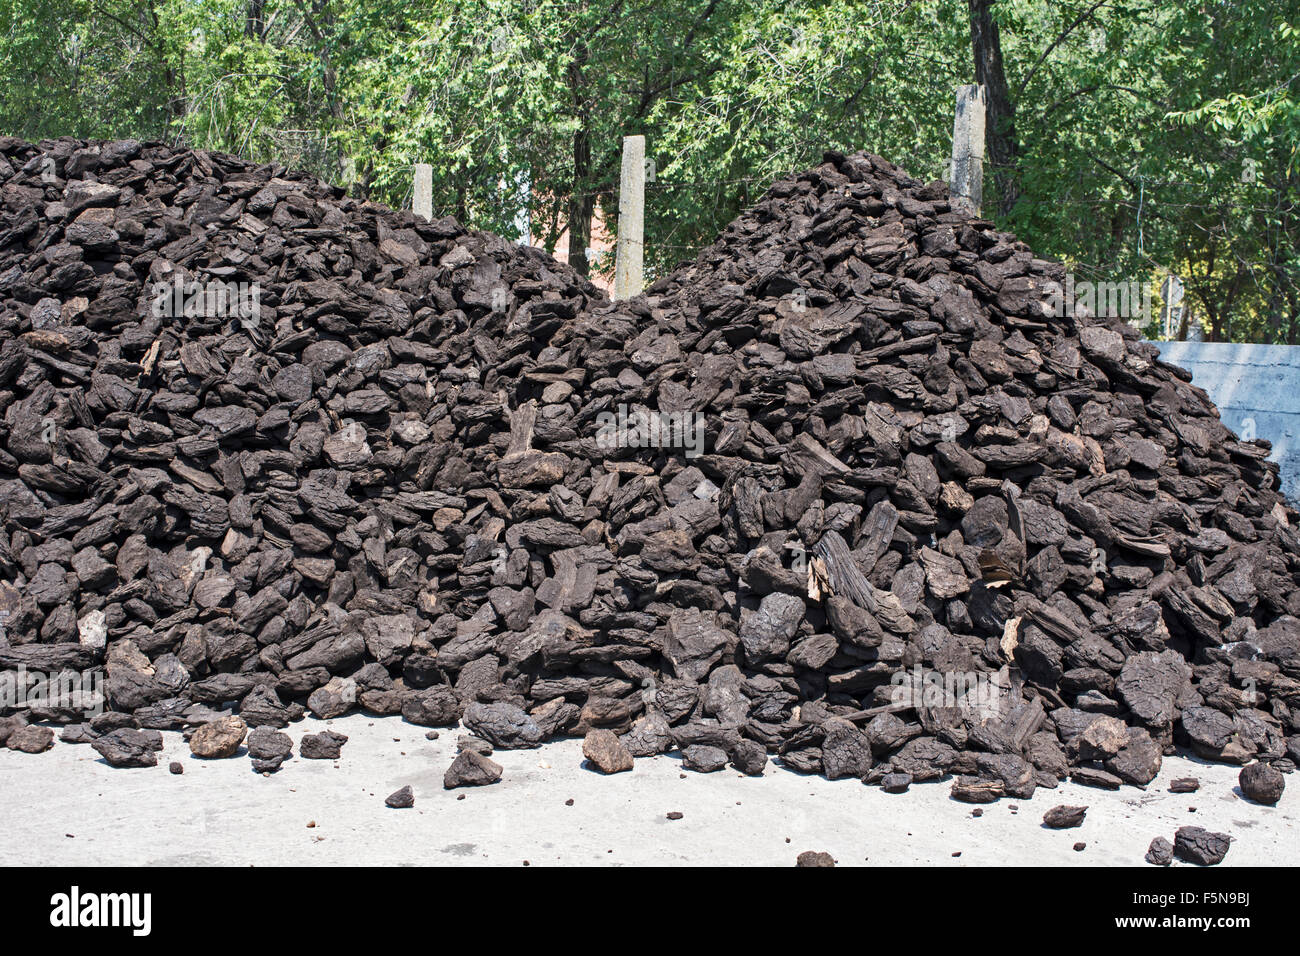 Gutes Preis-Leistungsverhältnis und gute Qualität der Kohle auf Lager warten auf die ersten Kunden. Stockfoto